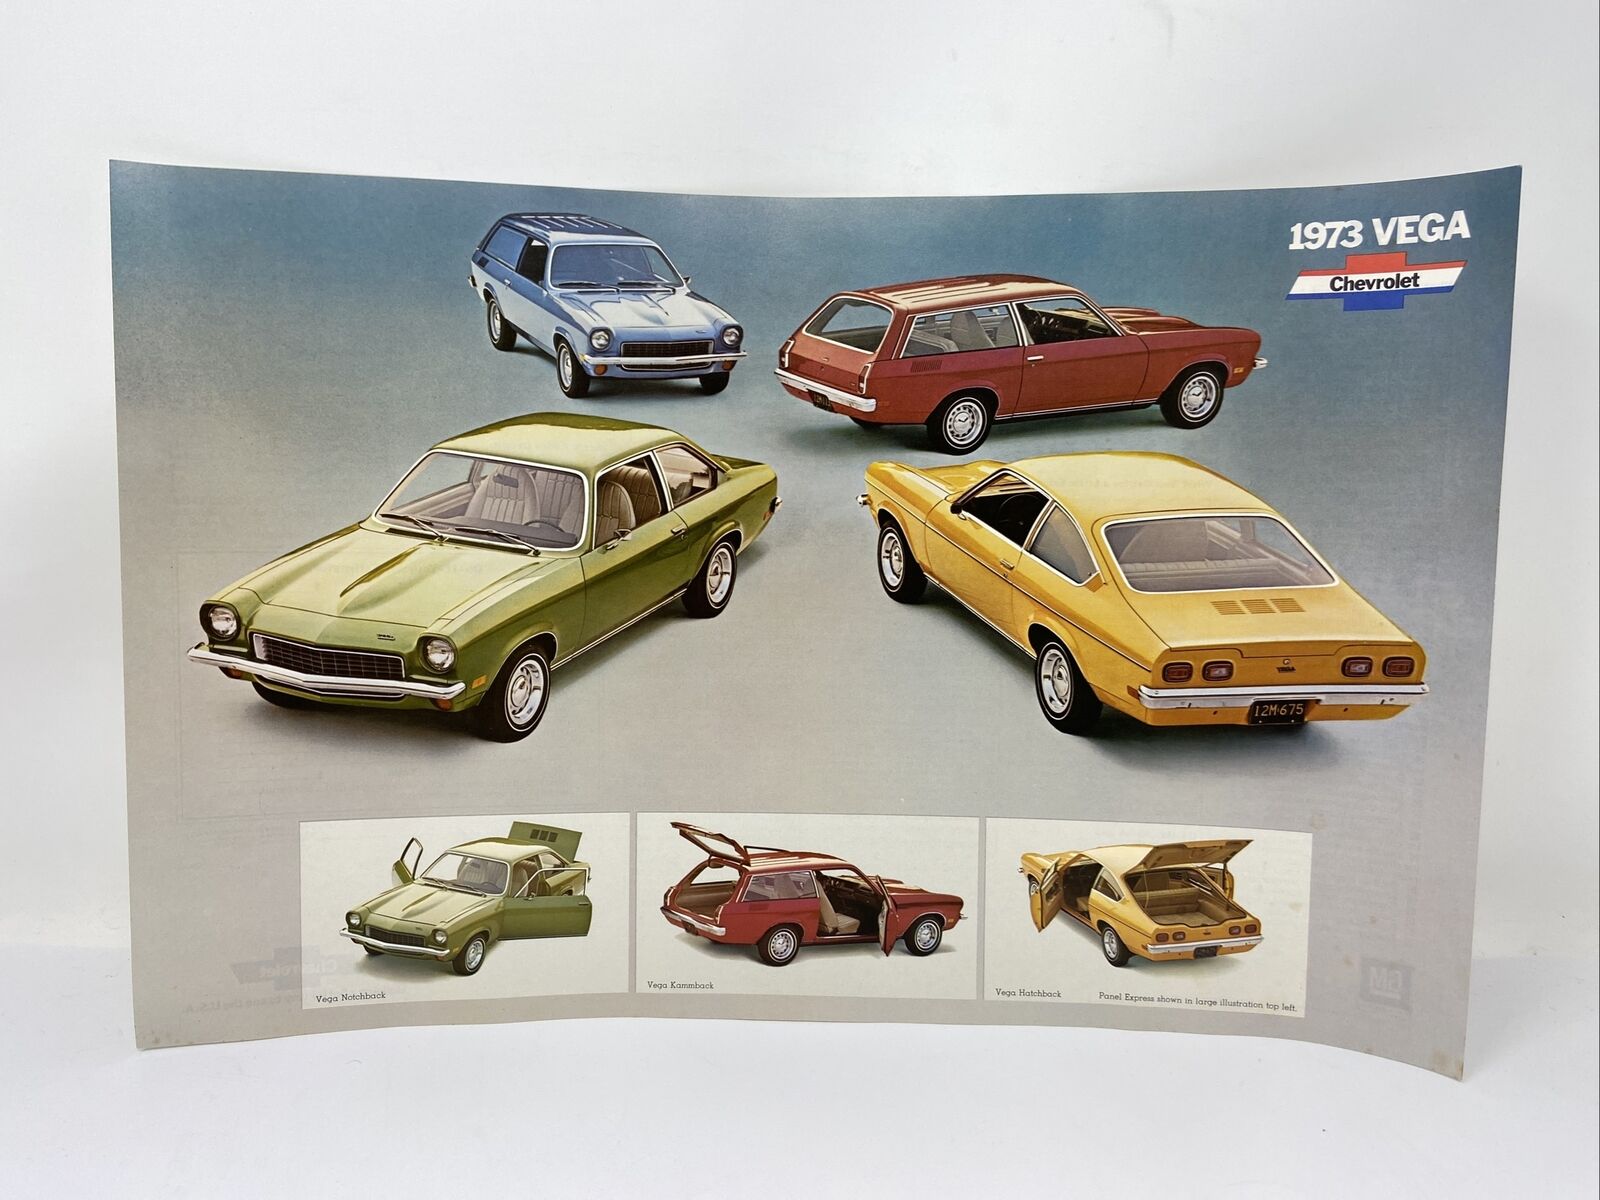 1973 1974 Chevrolet Vega Dealership Chevy Showroom Poster w/ Specs on Back